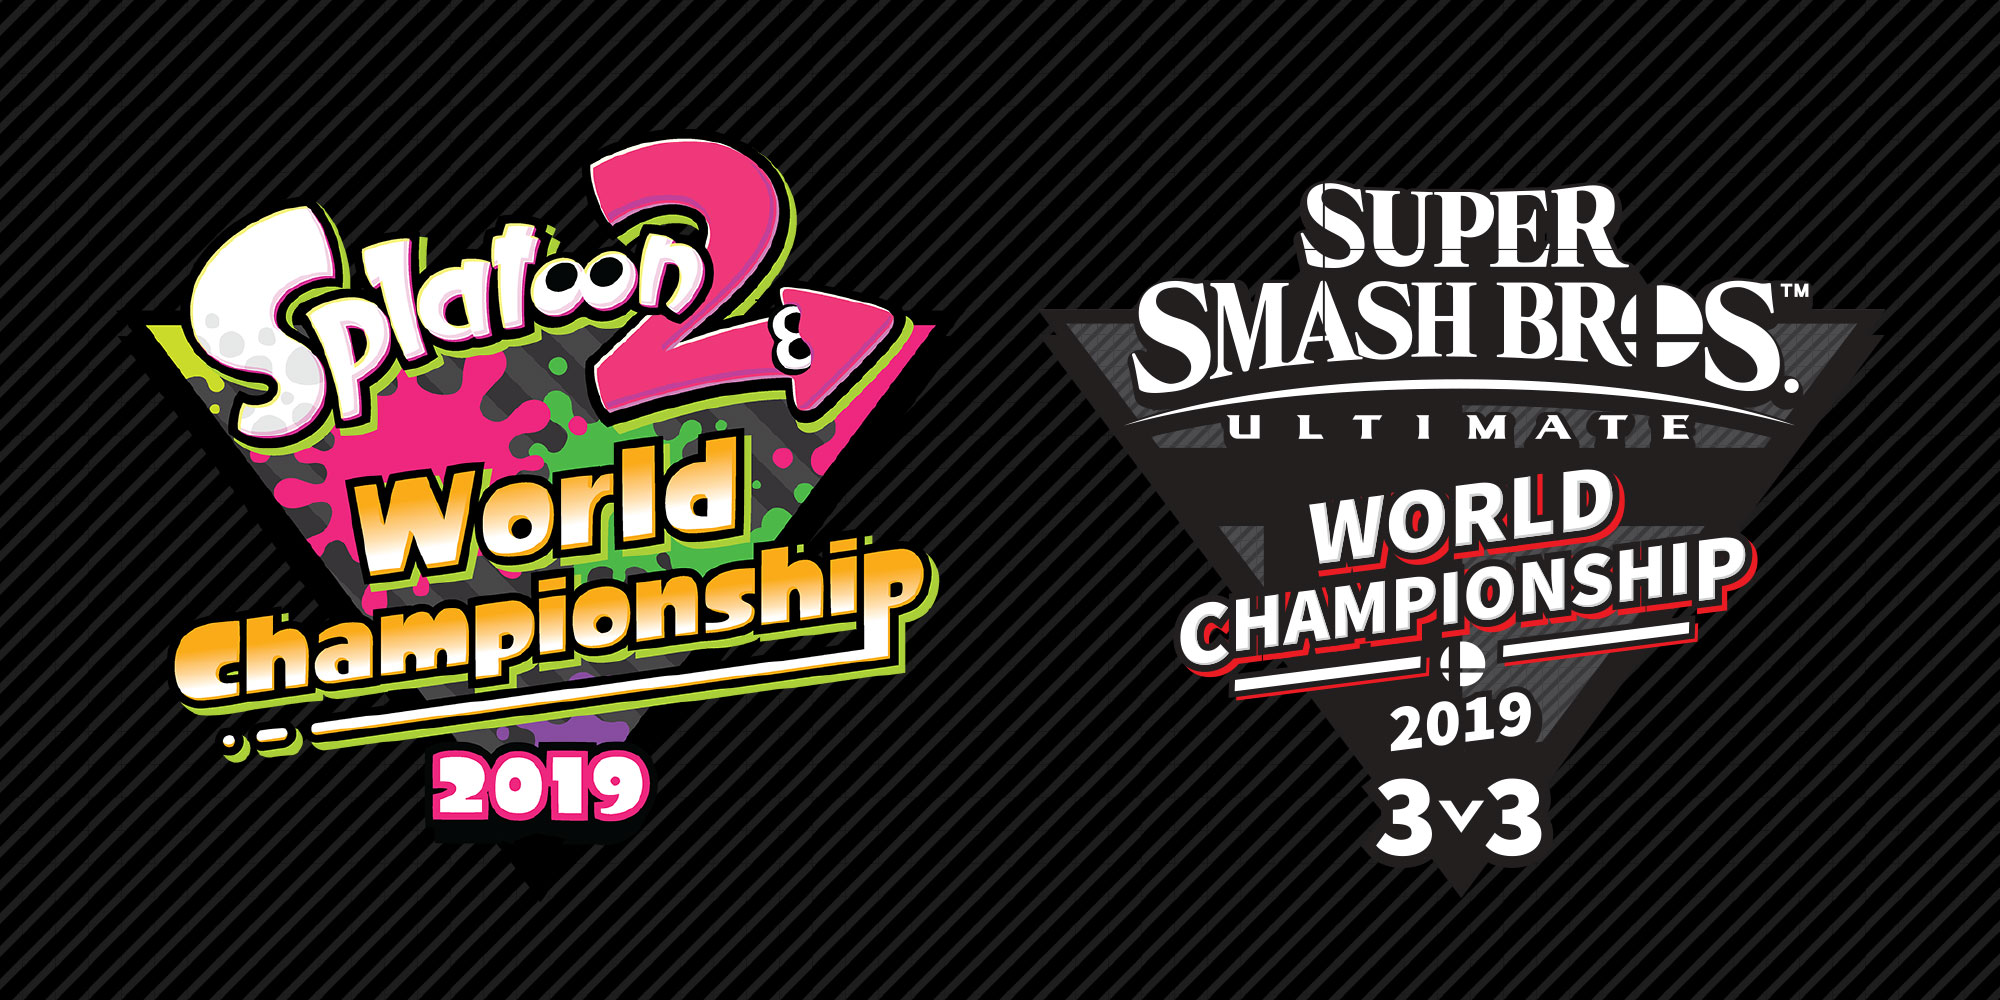 Les champions du monde de Splatoon 2 et Super Smash Bros. Ultimate ont été couronnés à l'E3 2019 !